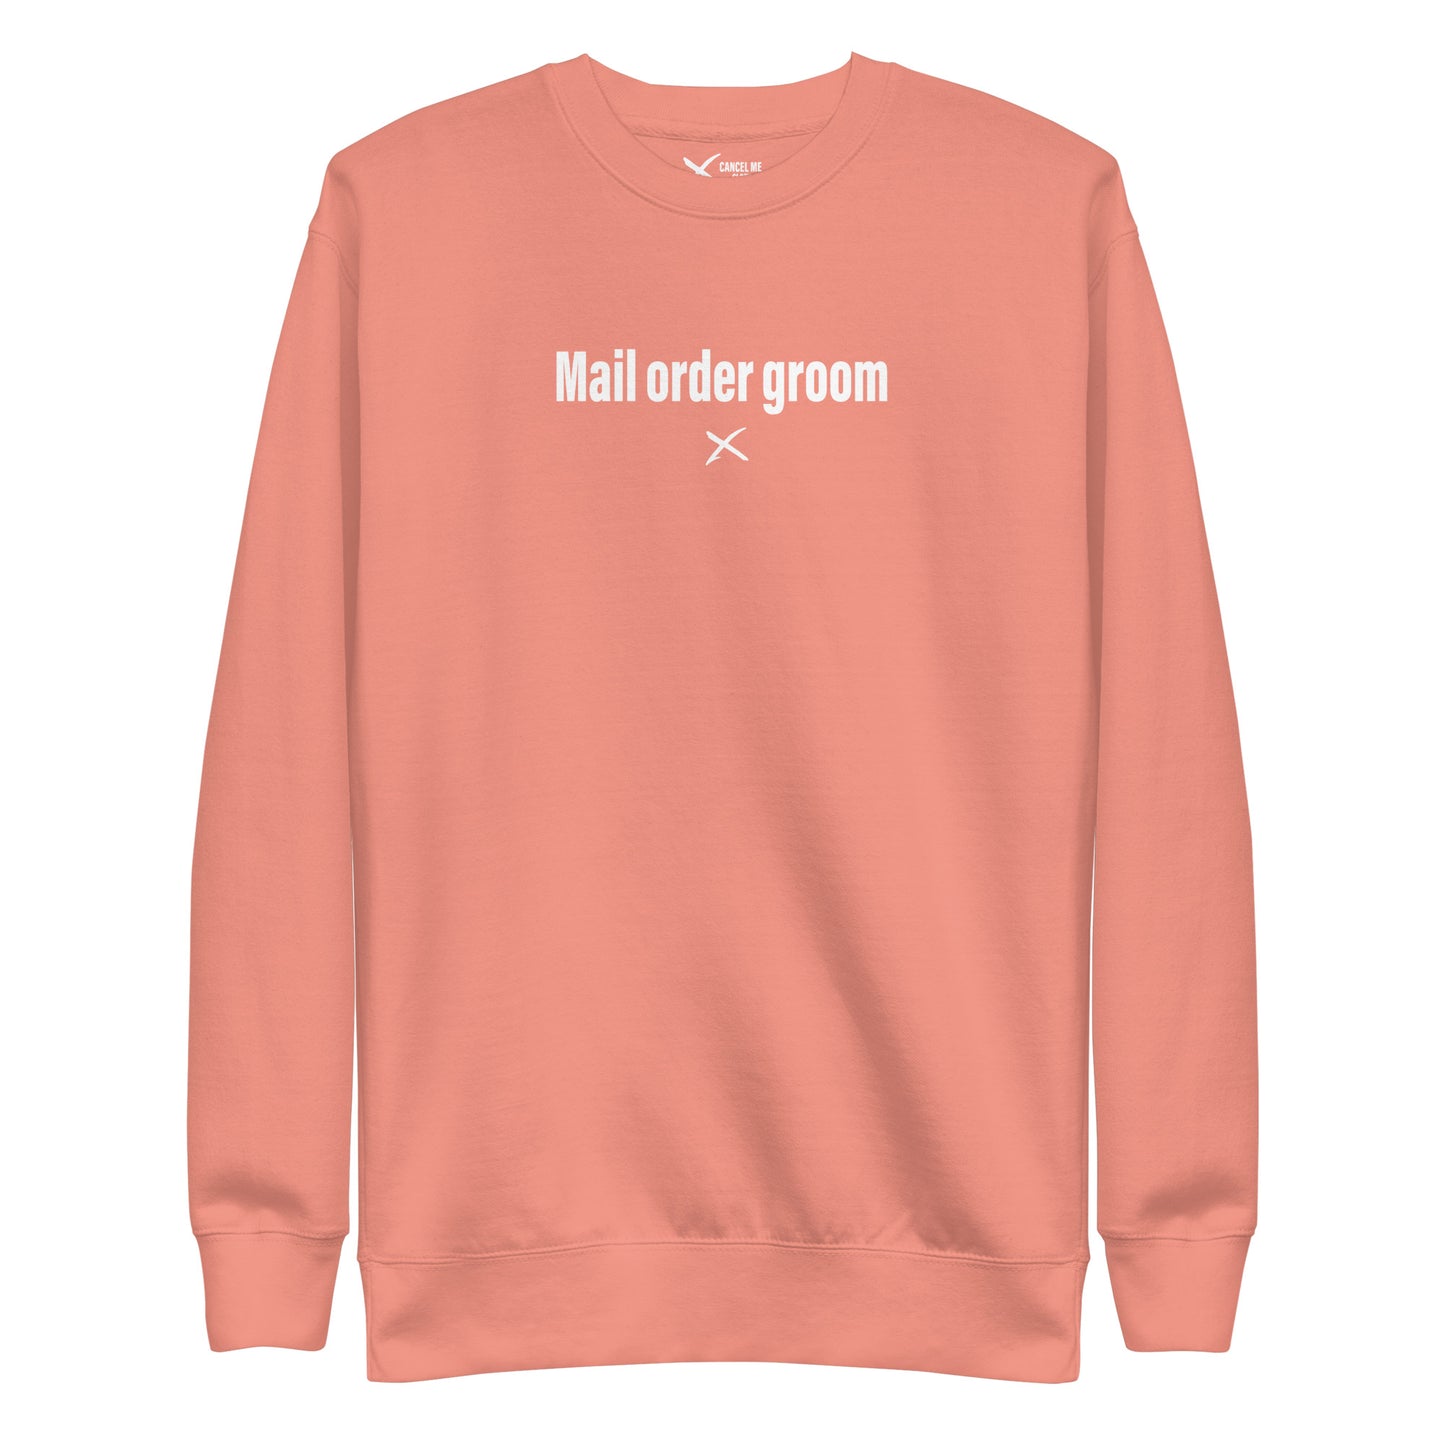 Mail order groom - Sweatshirt